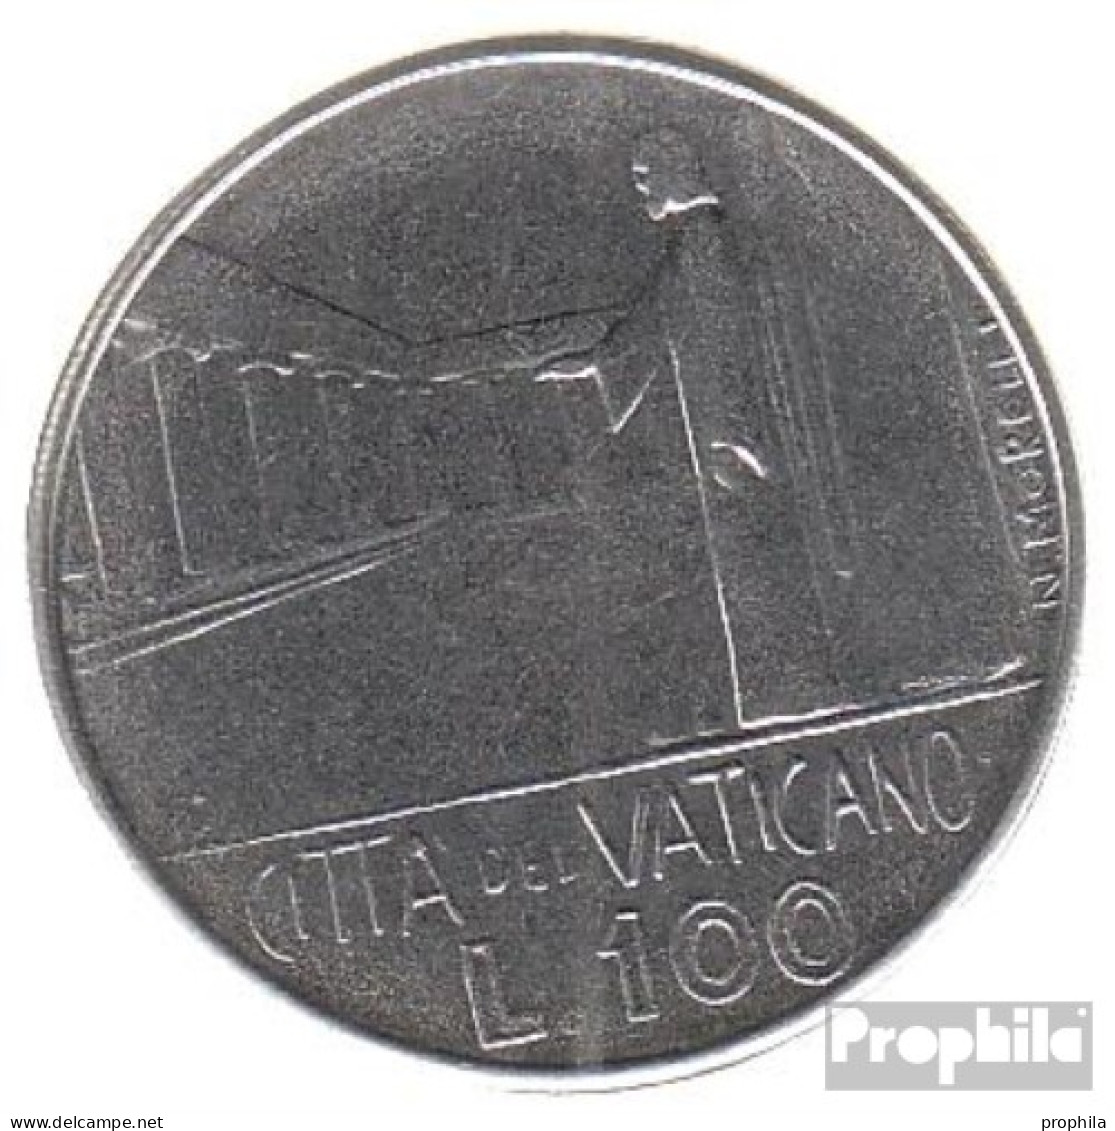 Vatikanstadt KM-Nr. : 137 1978 Stgl./unzirkuliert Stahl Stgl./unzirkuliert 1978 100 Lire Gekröntes Wappen - Vatican